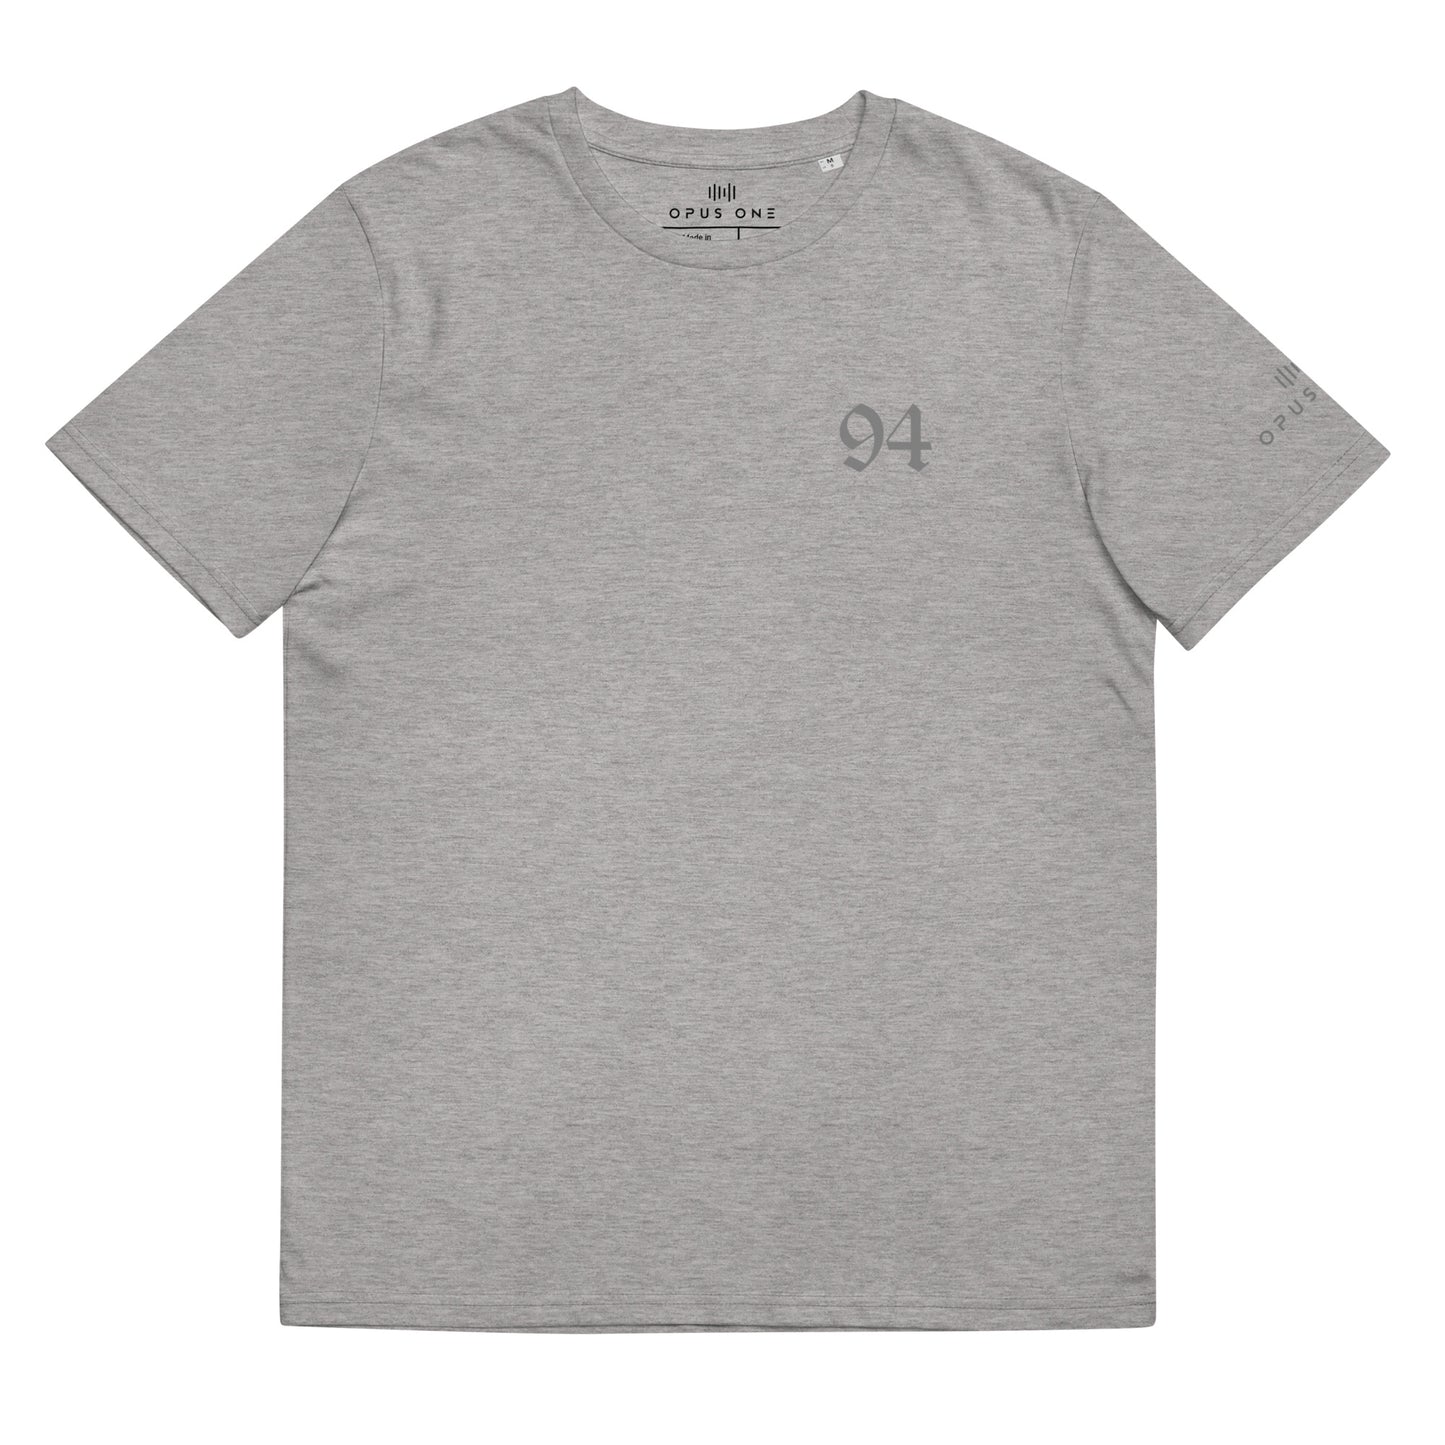 D&B (94 v1) Unisex organic cotton t-shirt (Grey Text)